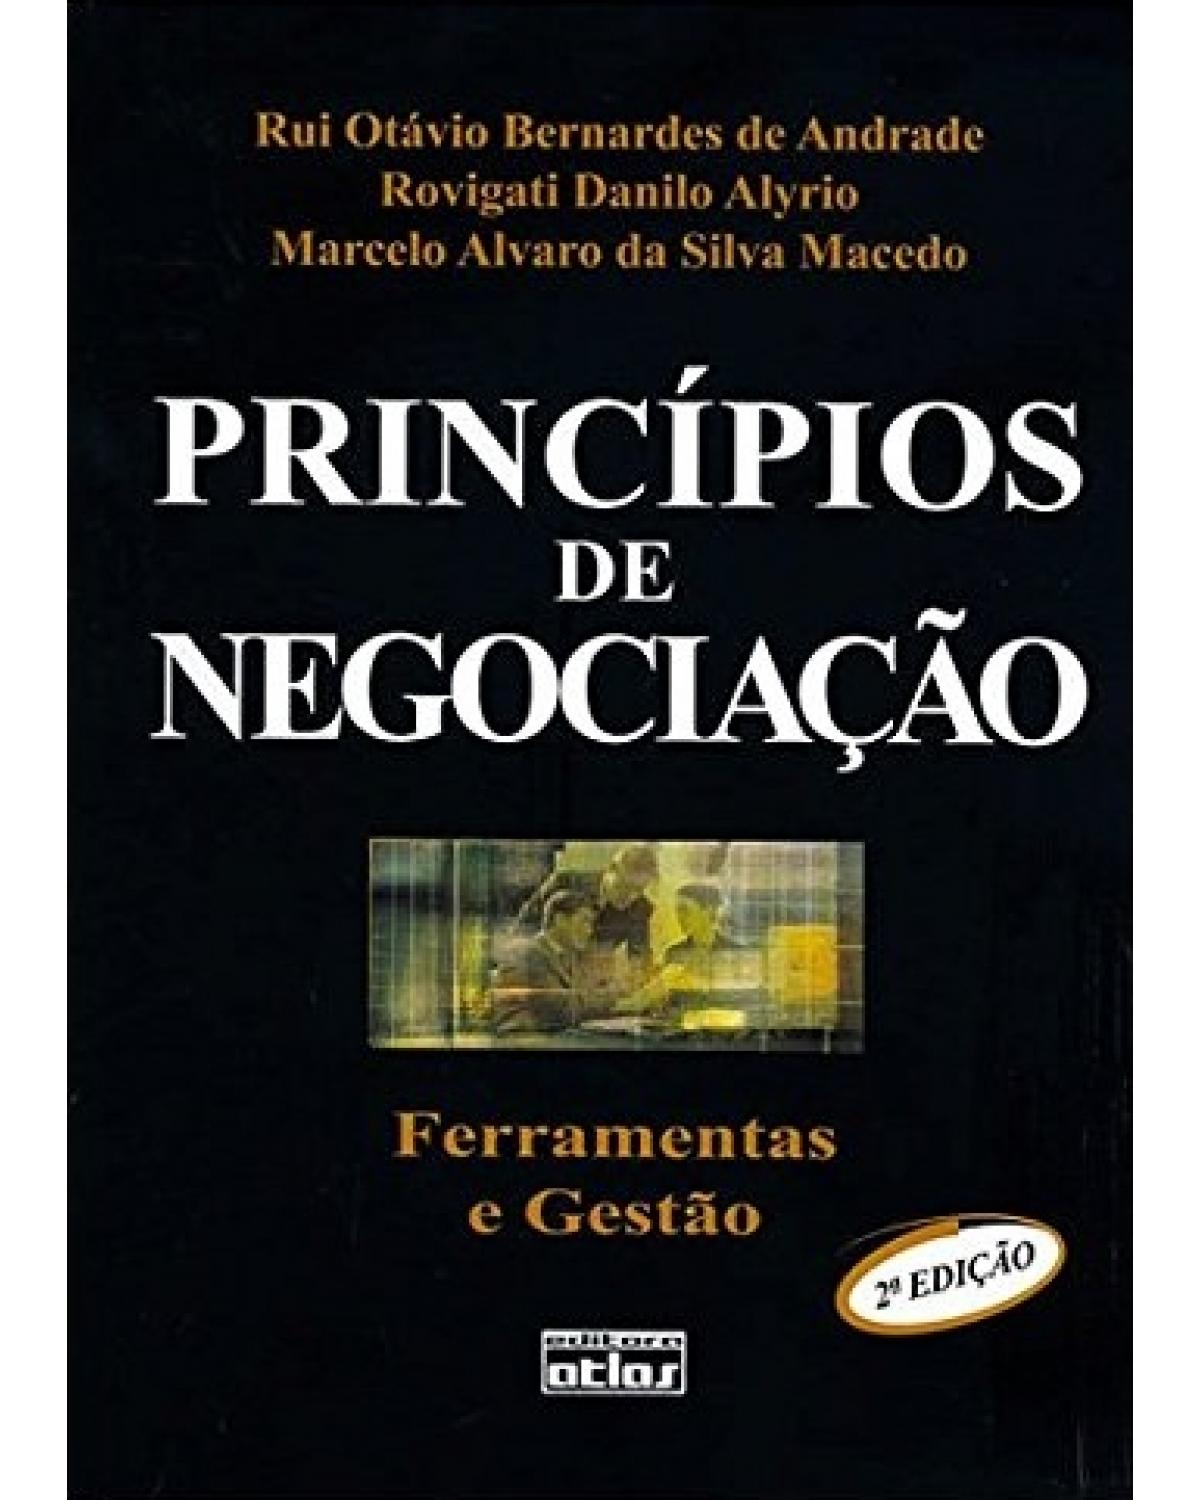 Princípios de negociação - Ferramentas e gestão - 2ª Edição | 2007